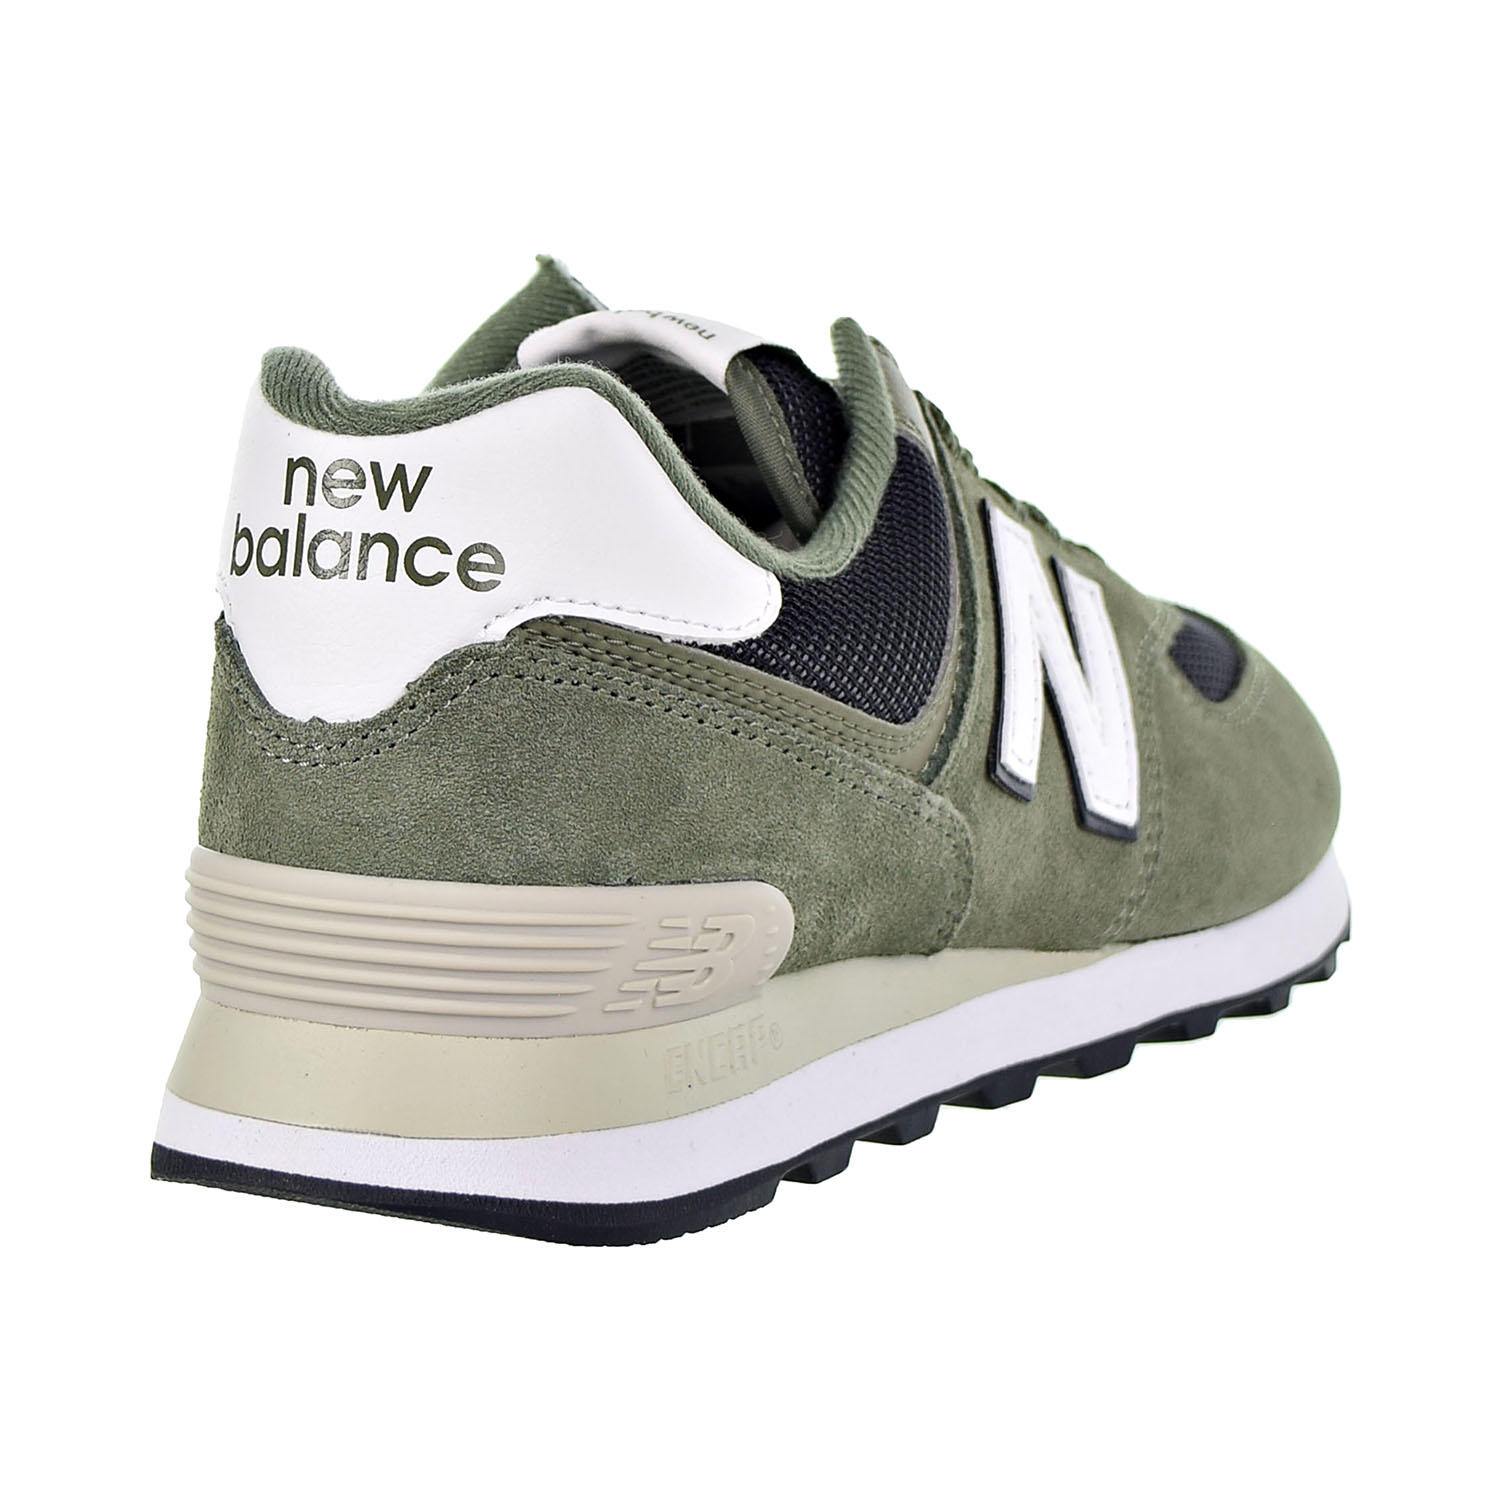 New Balance 574 Classics Men's Shoes Mineral Green ML574-ESP | eBay